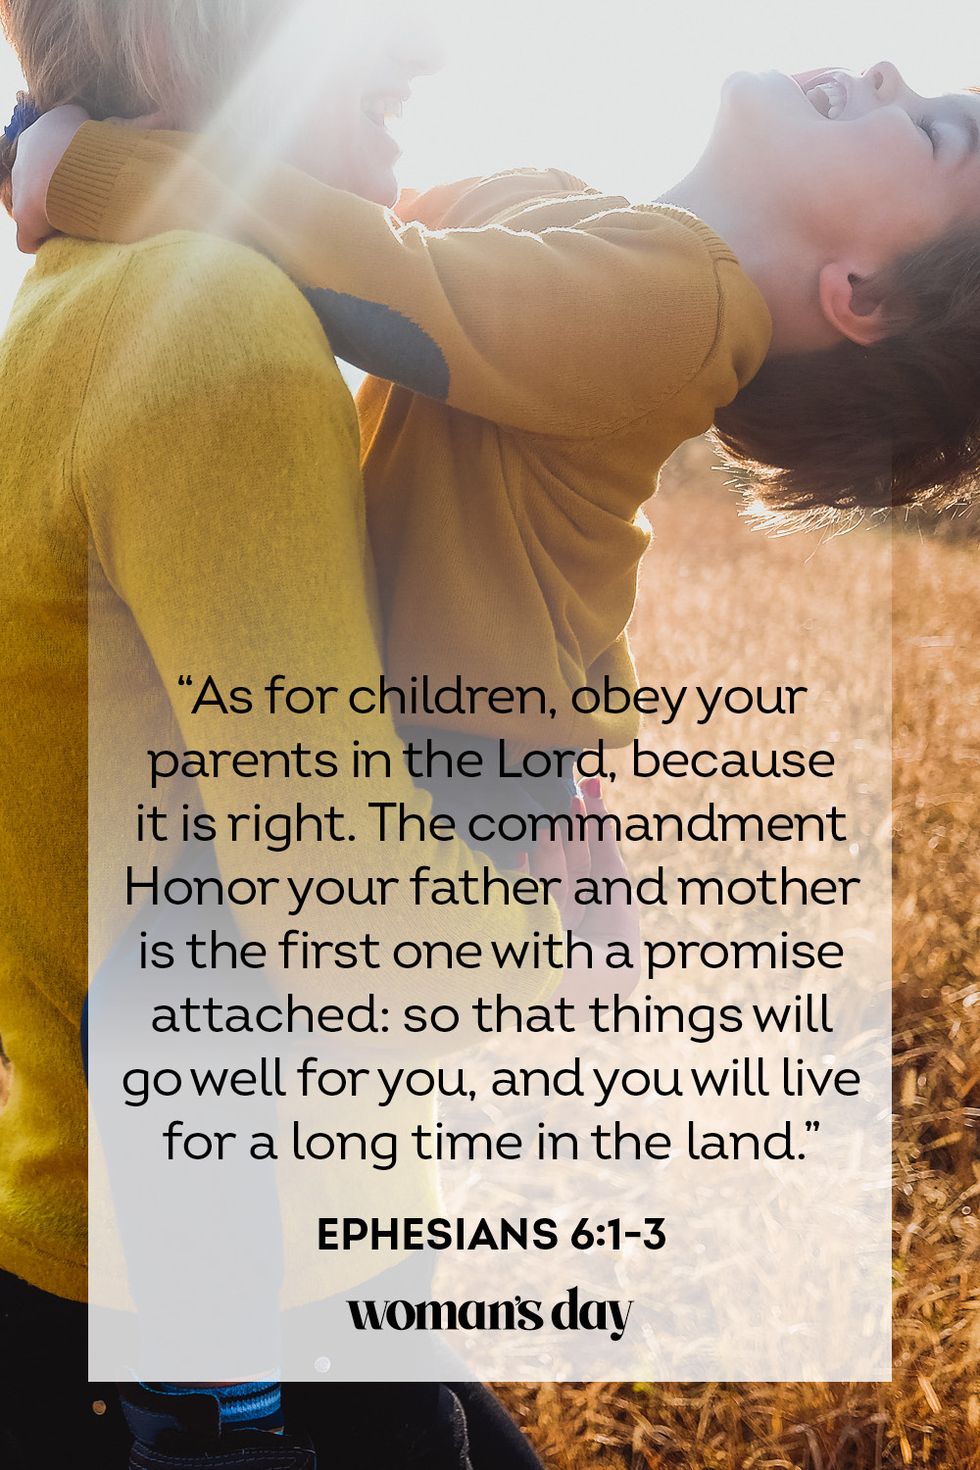 1 Corinthians 13 Love for Bio Parents – Still Orphans